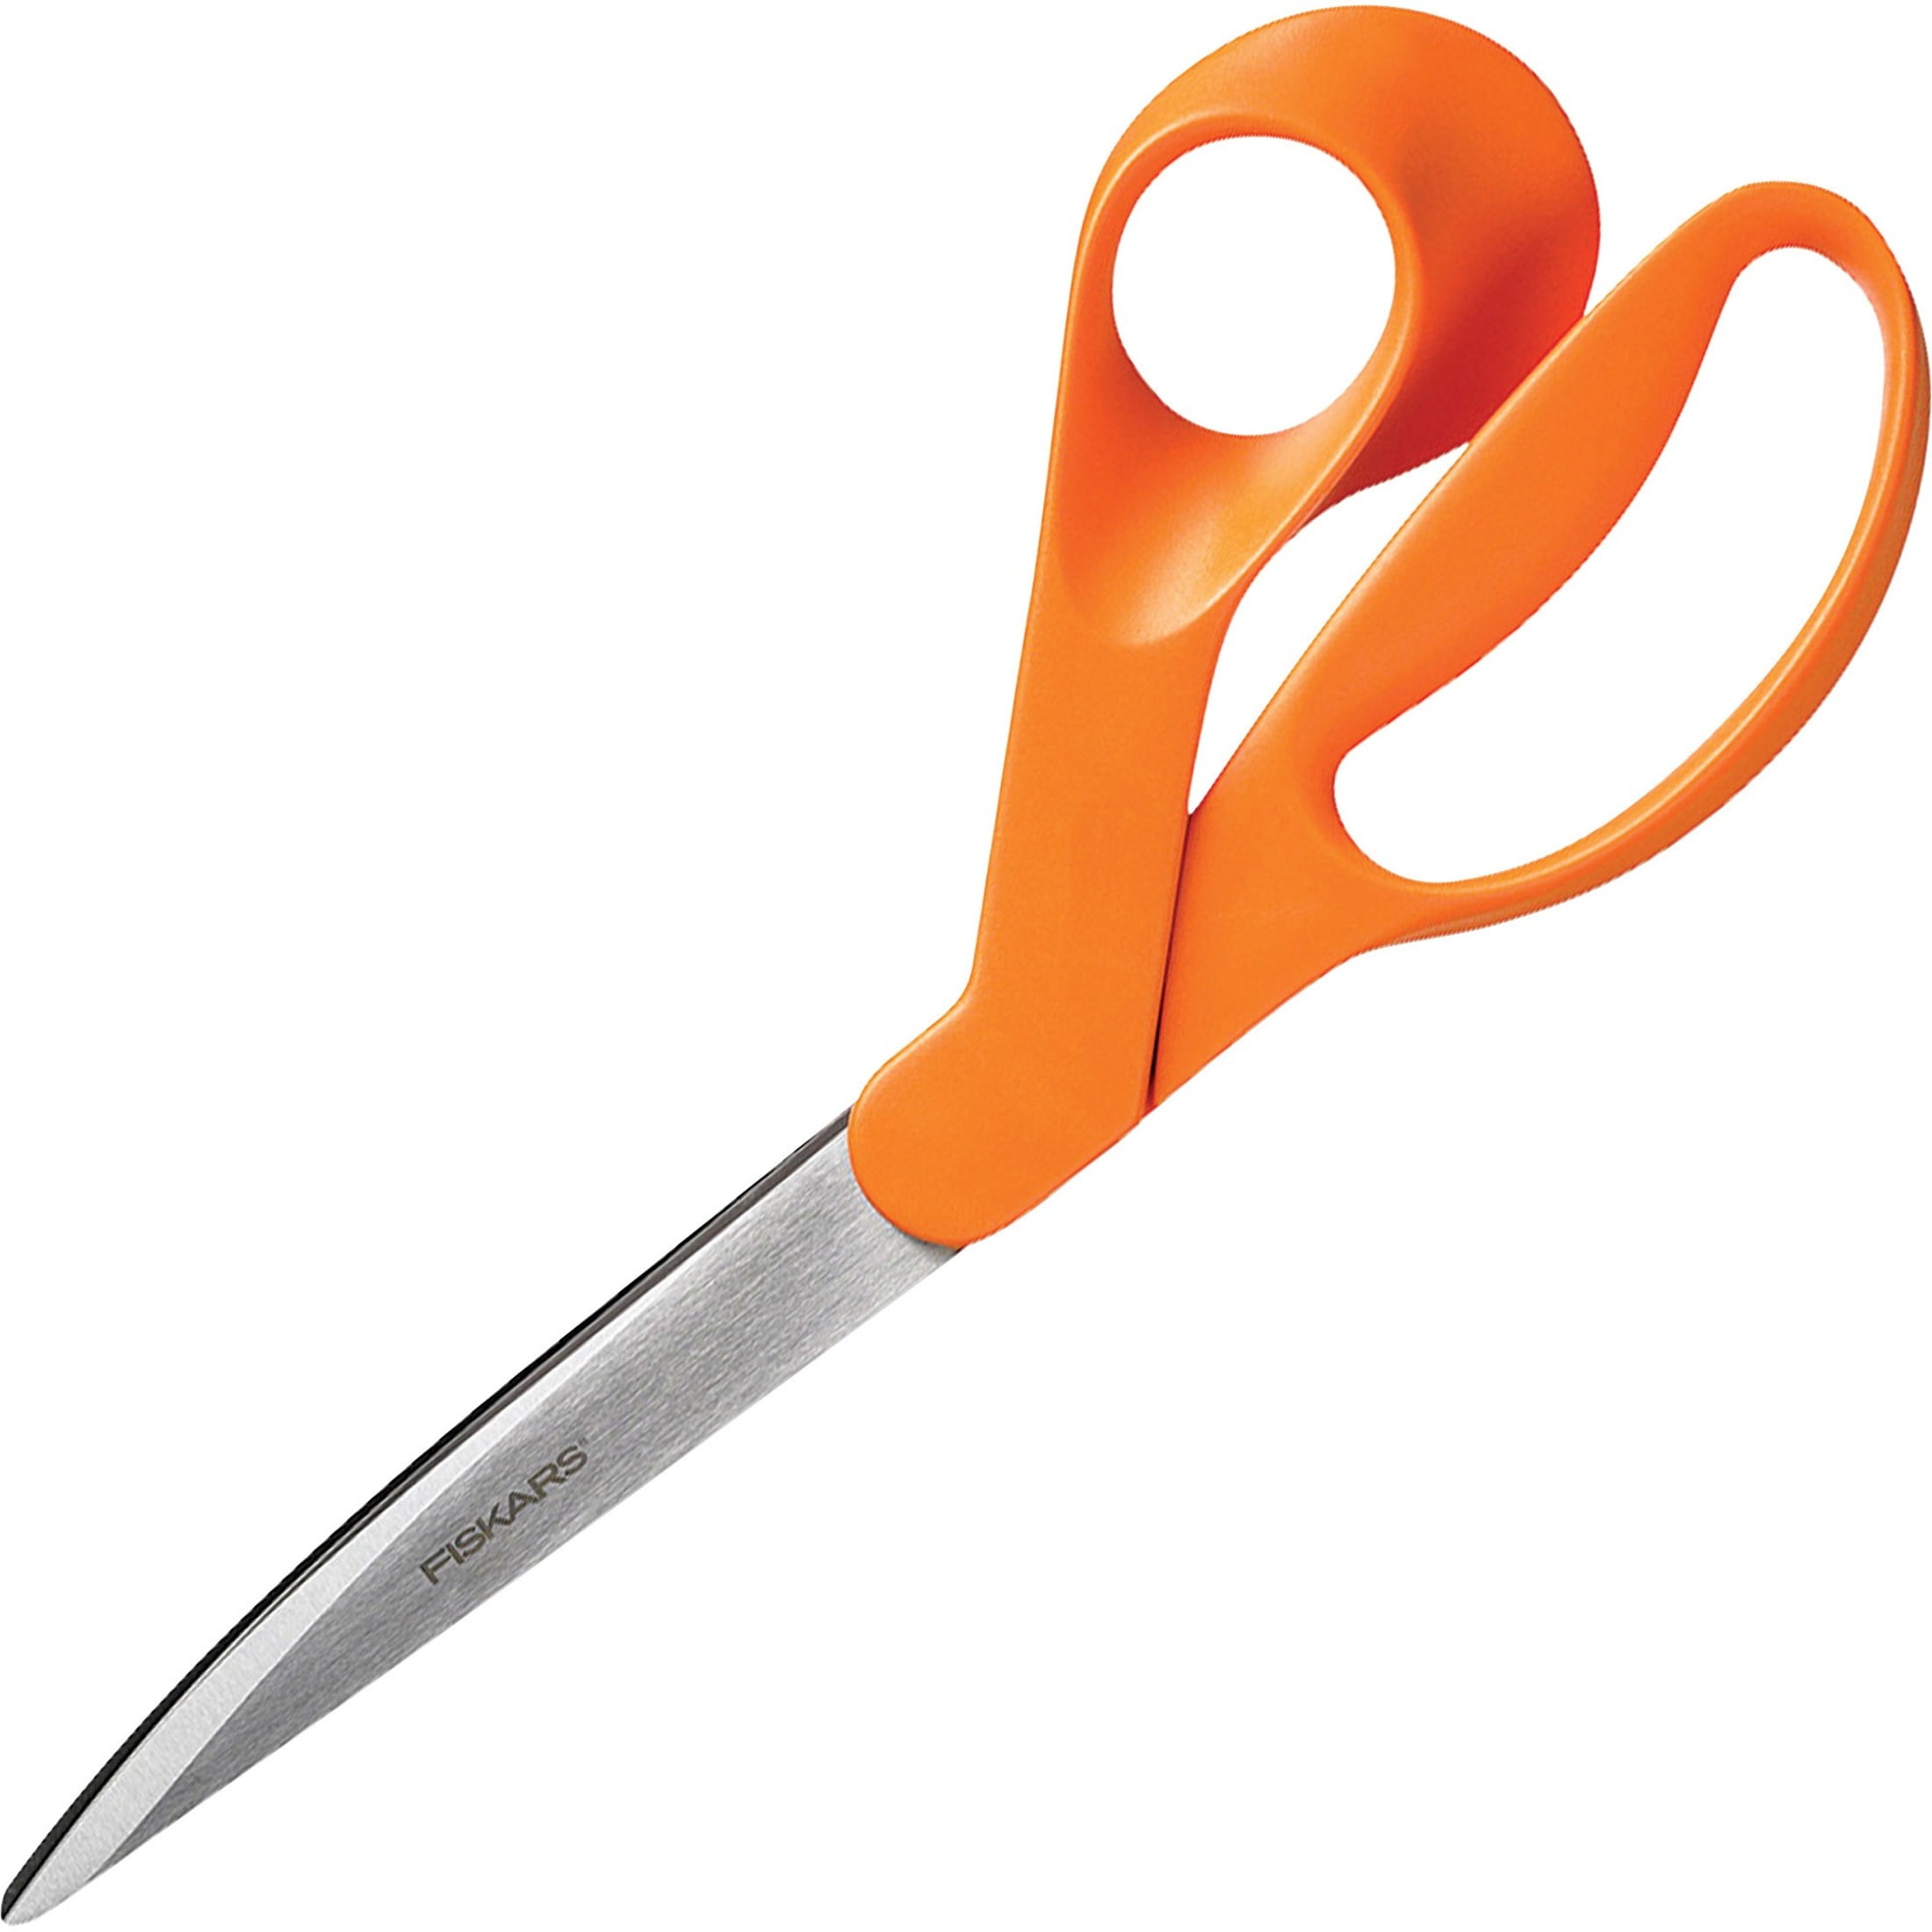 Classic Kitchen Scissors, Orange - Fiskars @ RoyalDesign